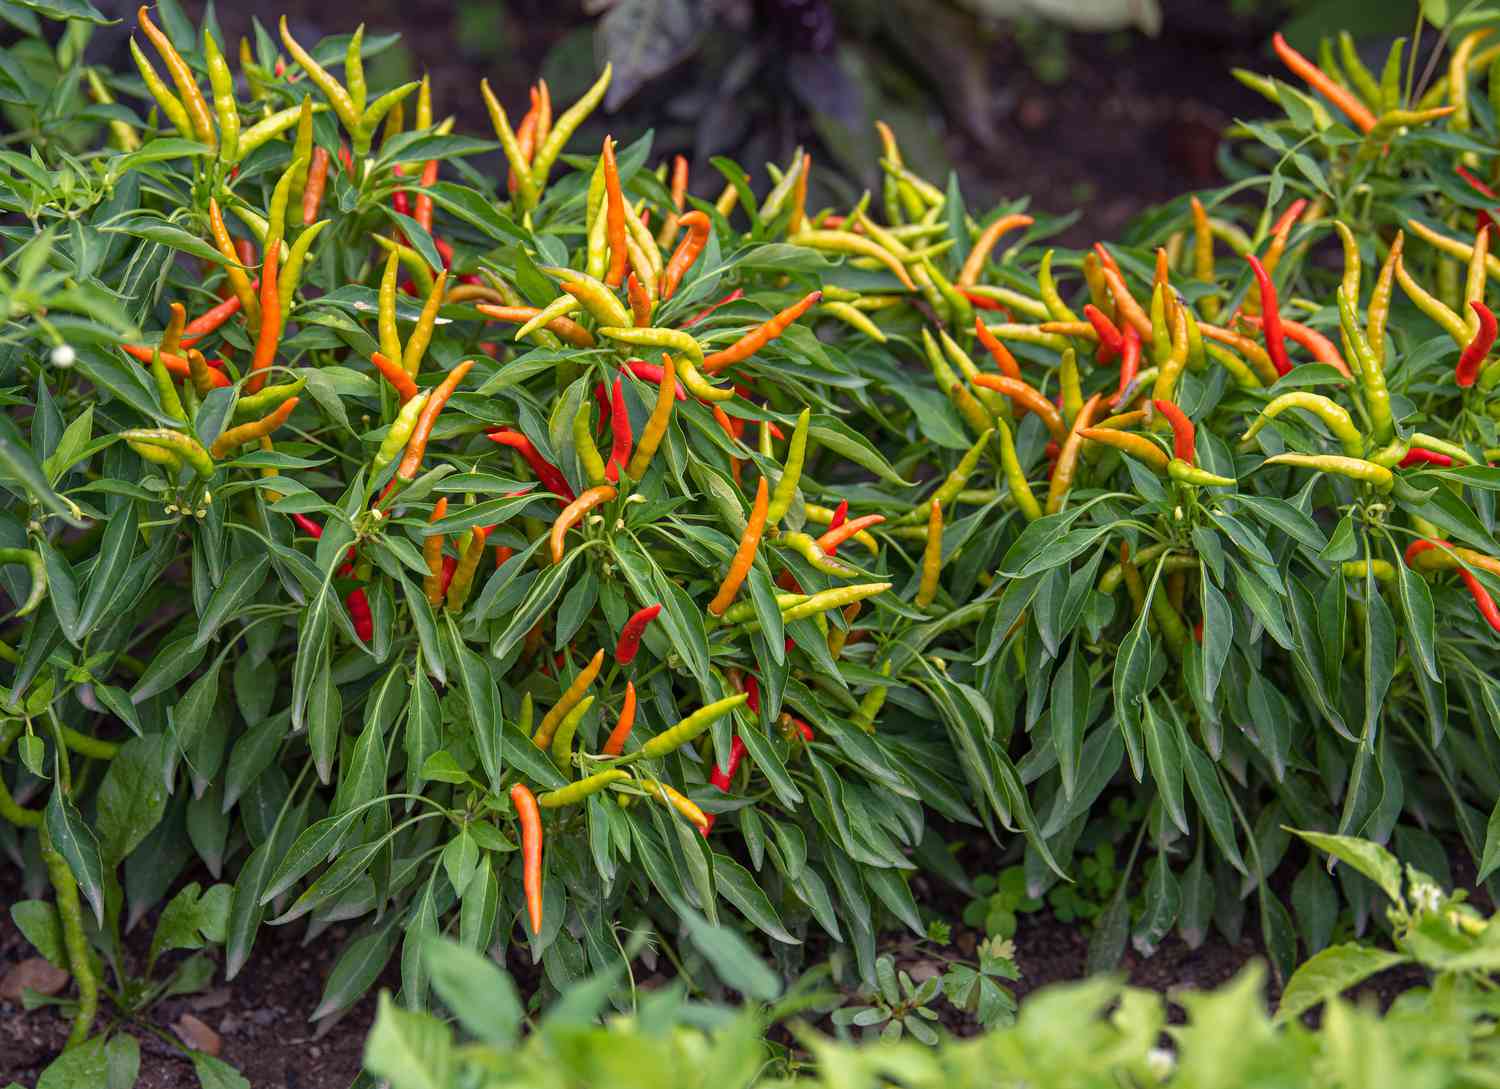 Zierpaprika-Gemüsepflanzen mit dünnen Paprikaschoten in Orange, Gelb und Rot über langen dünnen Blättern